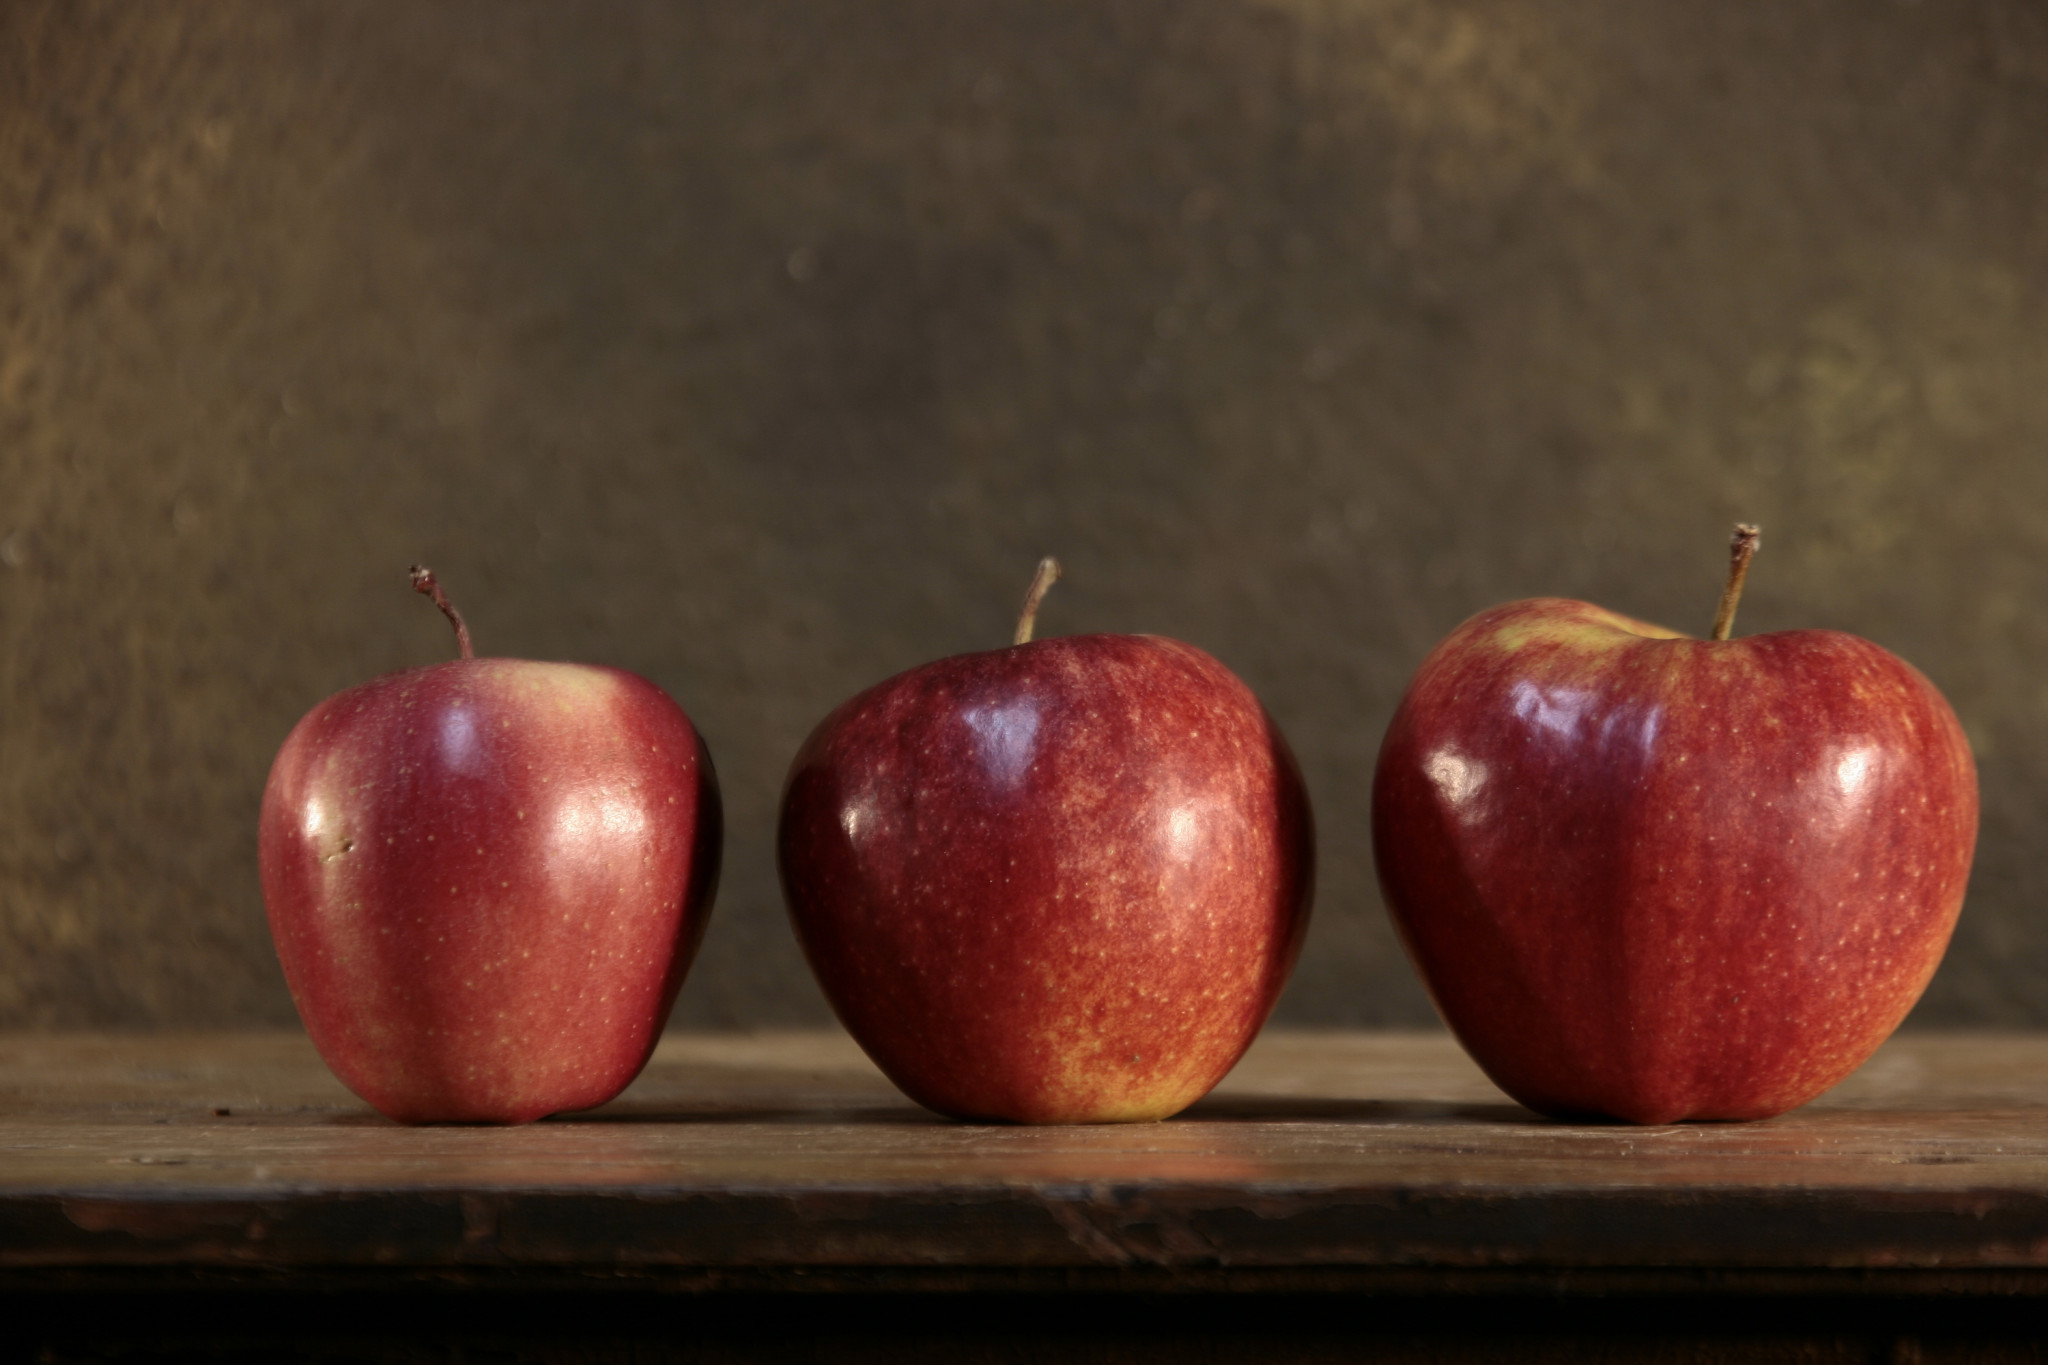 Включи 3 яблока. Три яблока. Картинка 3 яблока. Два красных яблока.